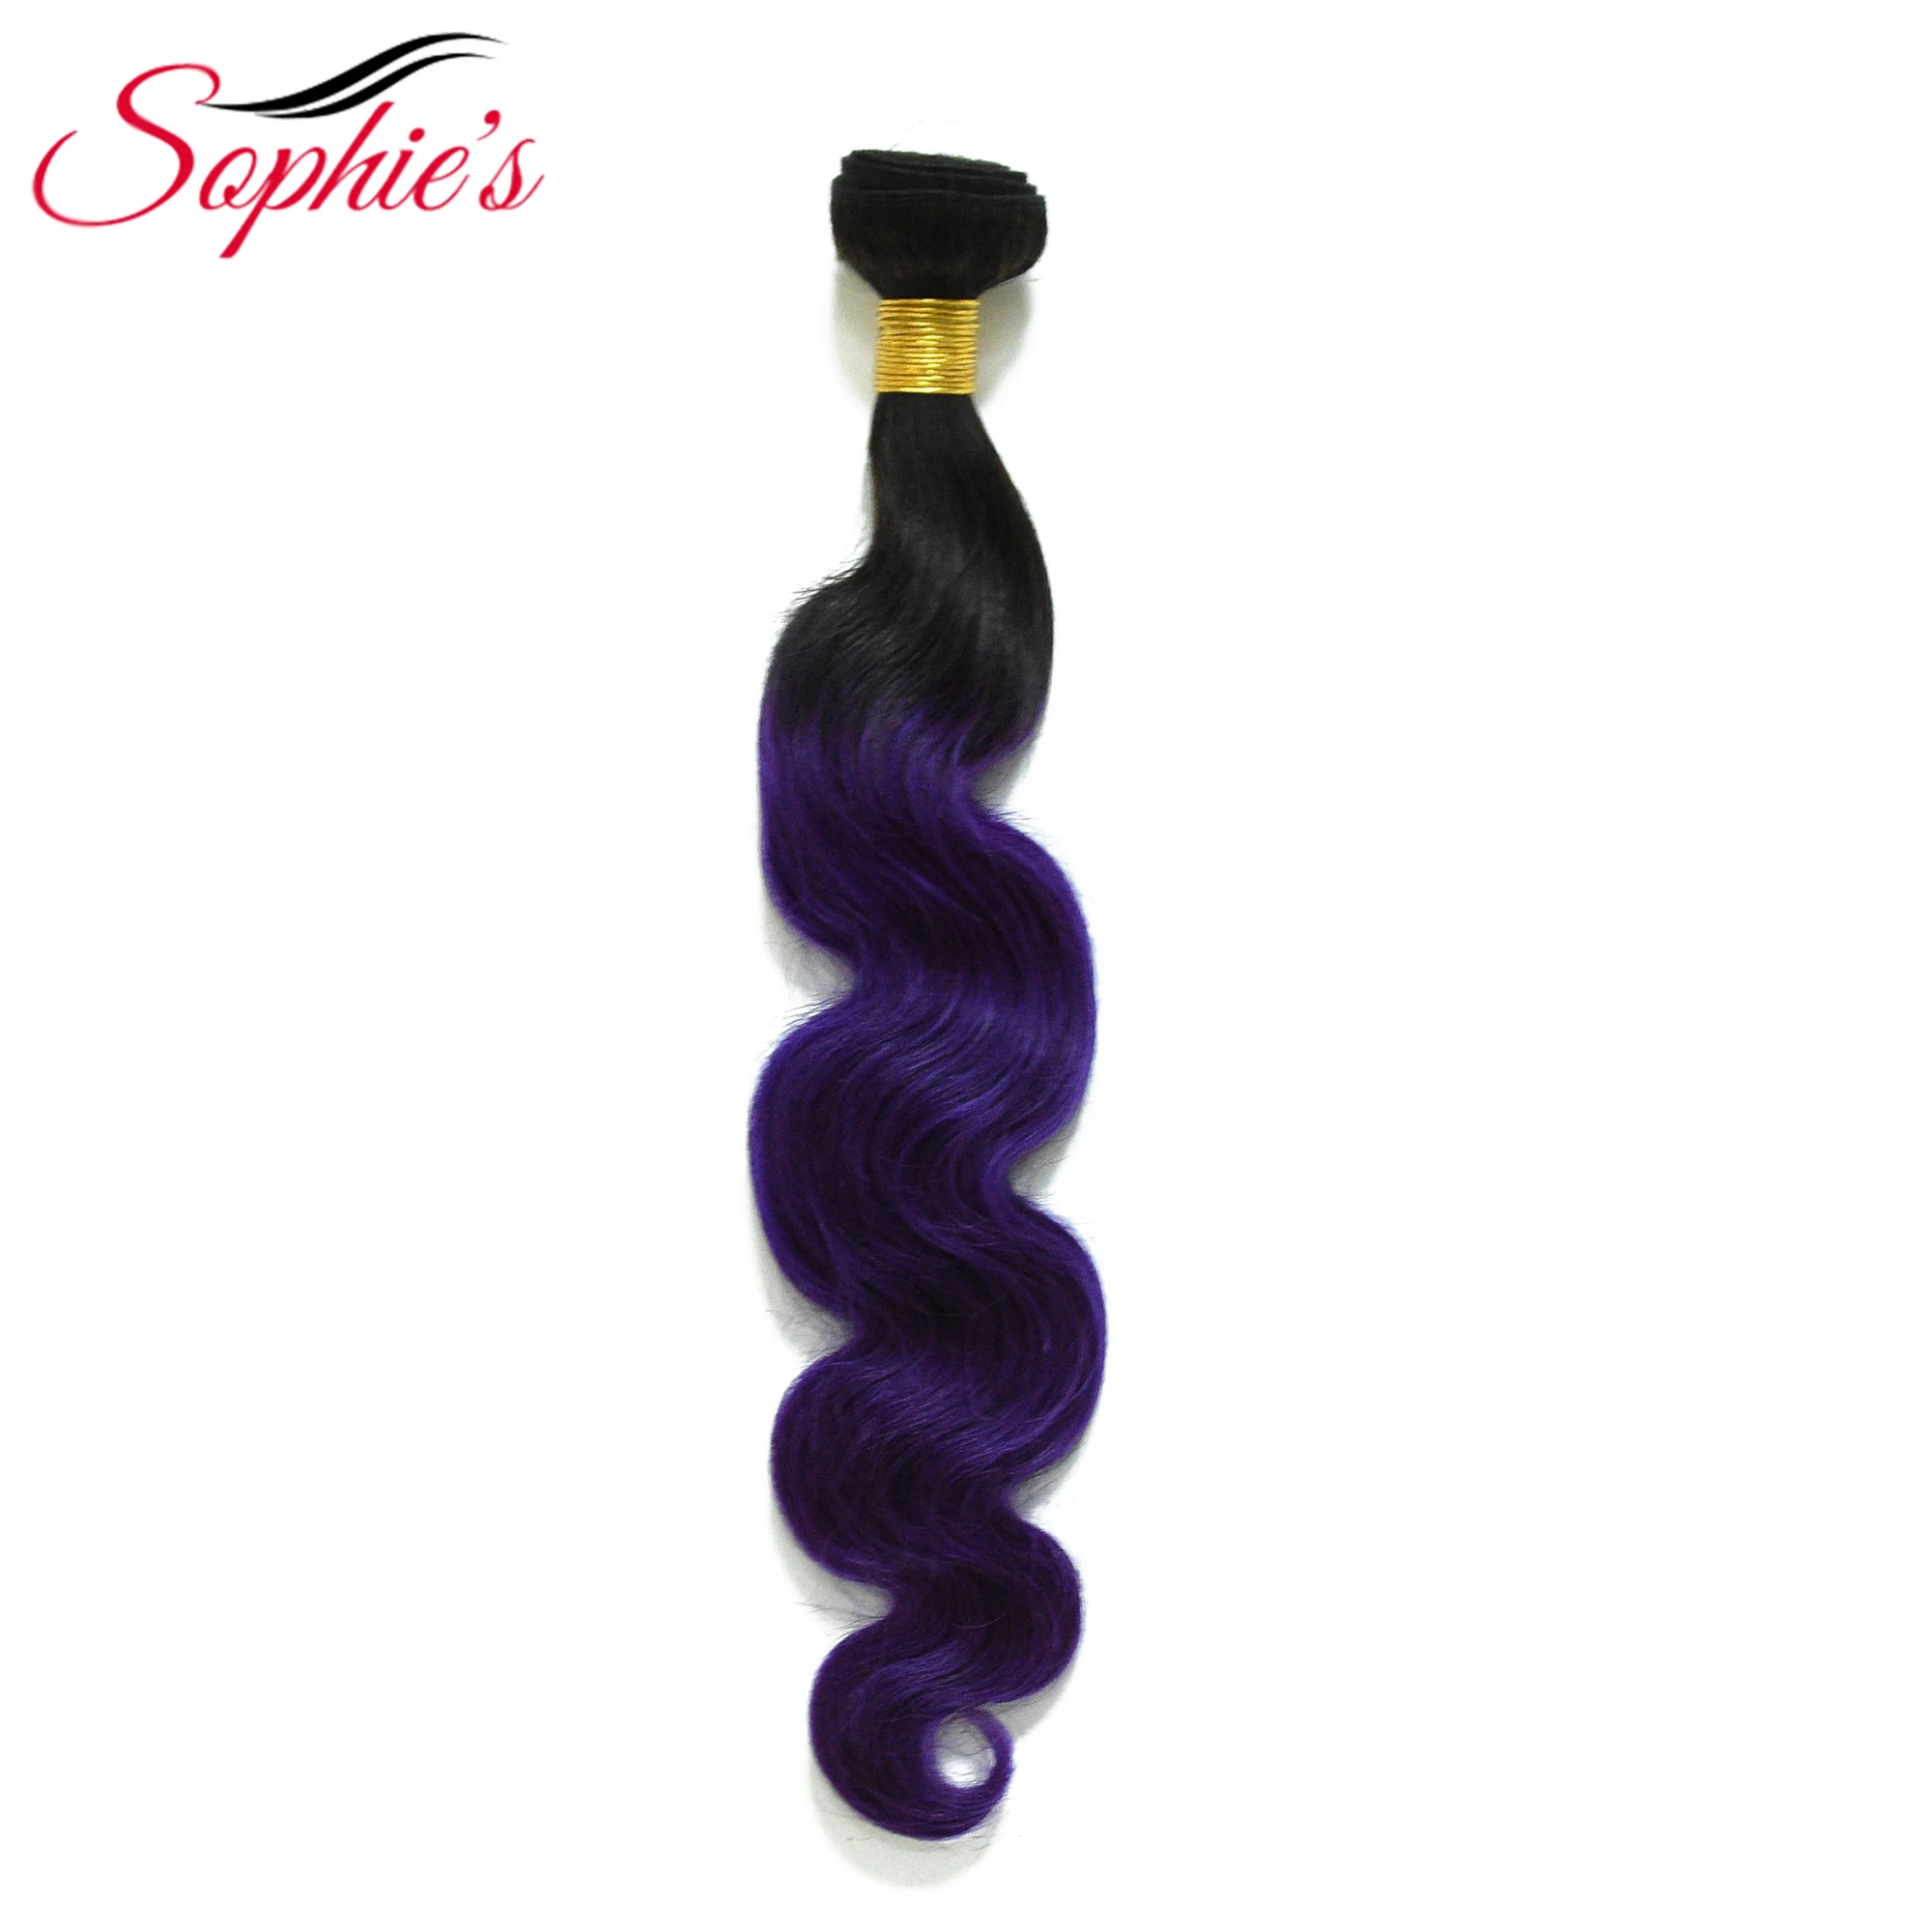 Софи предварительно Цвет ed Ombre T1B/фиолетовый цвет 1 пучки волос Малайзии натуральные волосы-объемной волны волос шить в наращивание волос